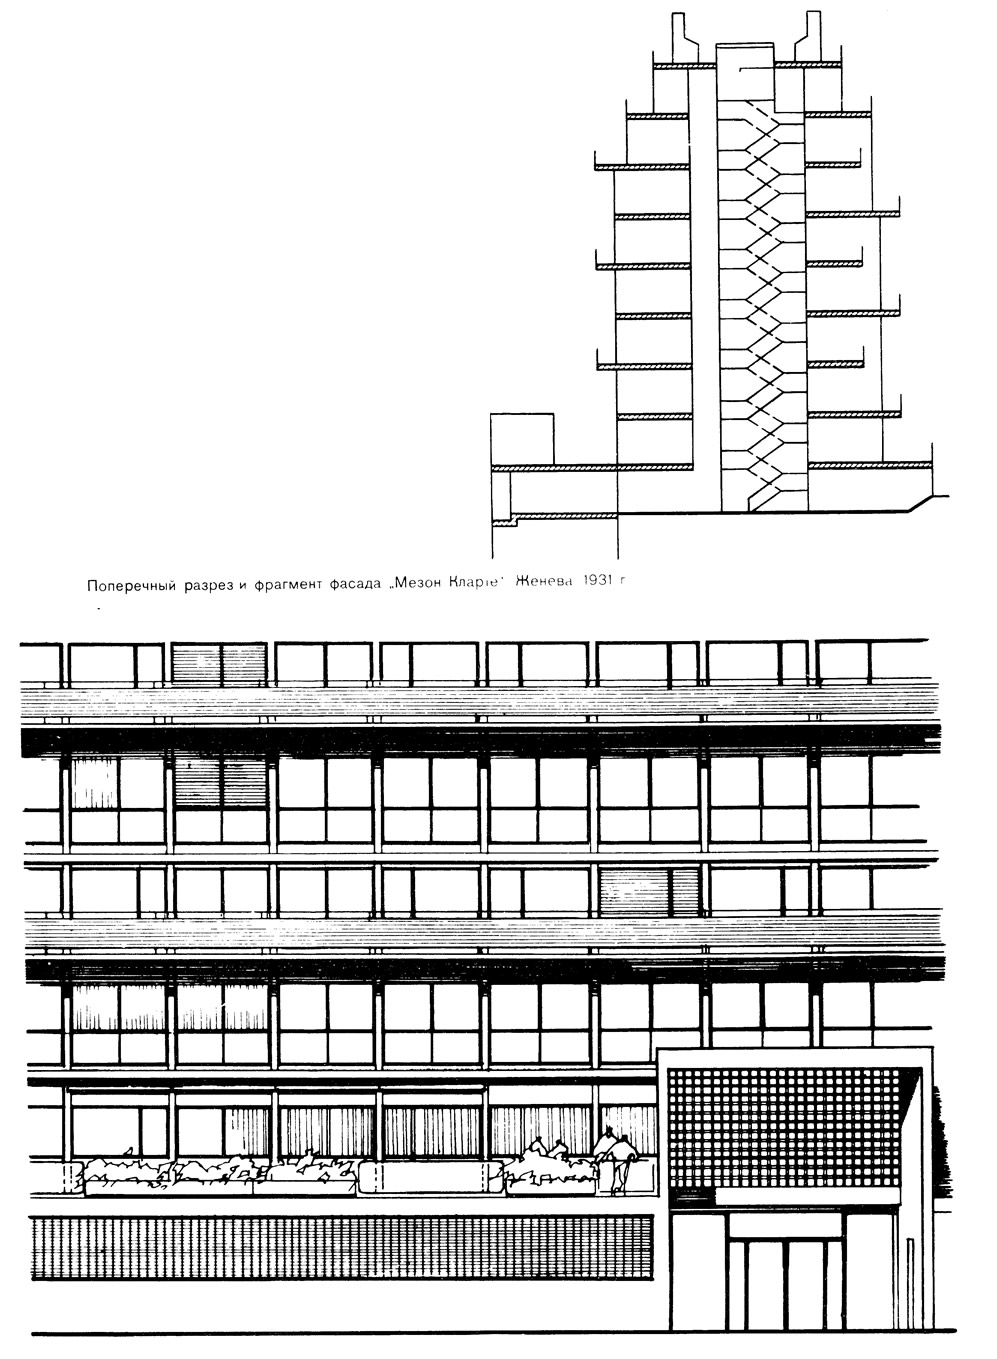 Поперечный разрез и фрагмент фасада Мезон Кларю Женева 1931.